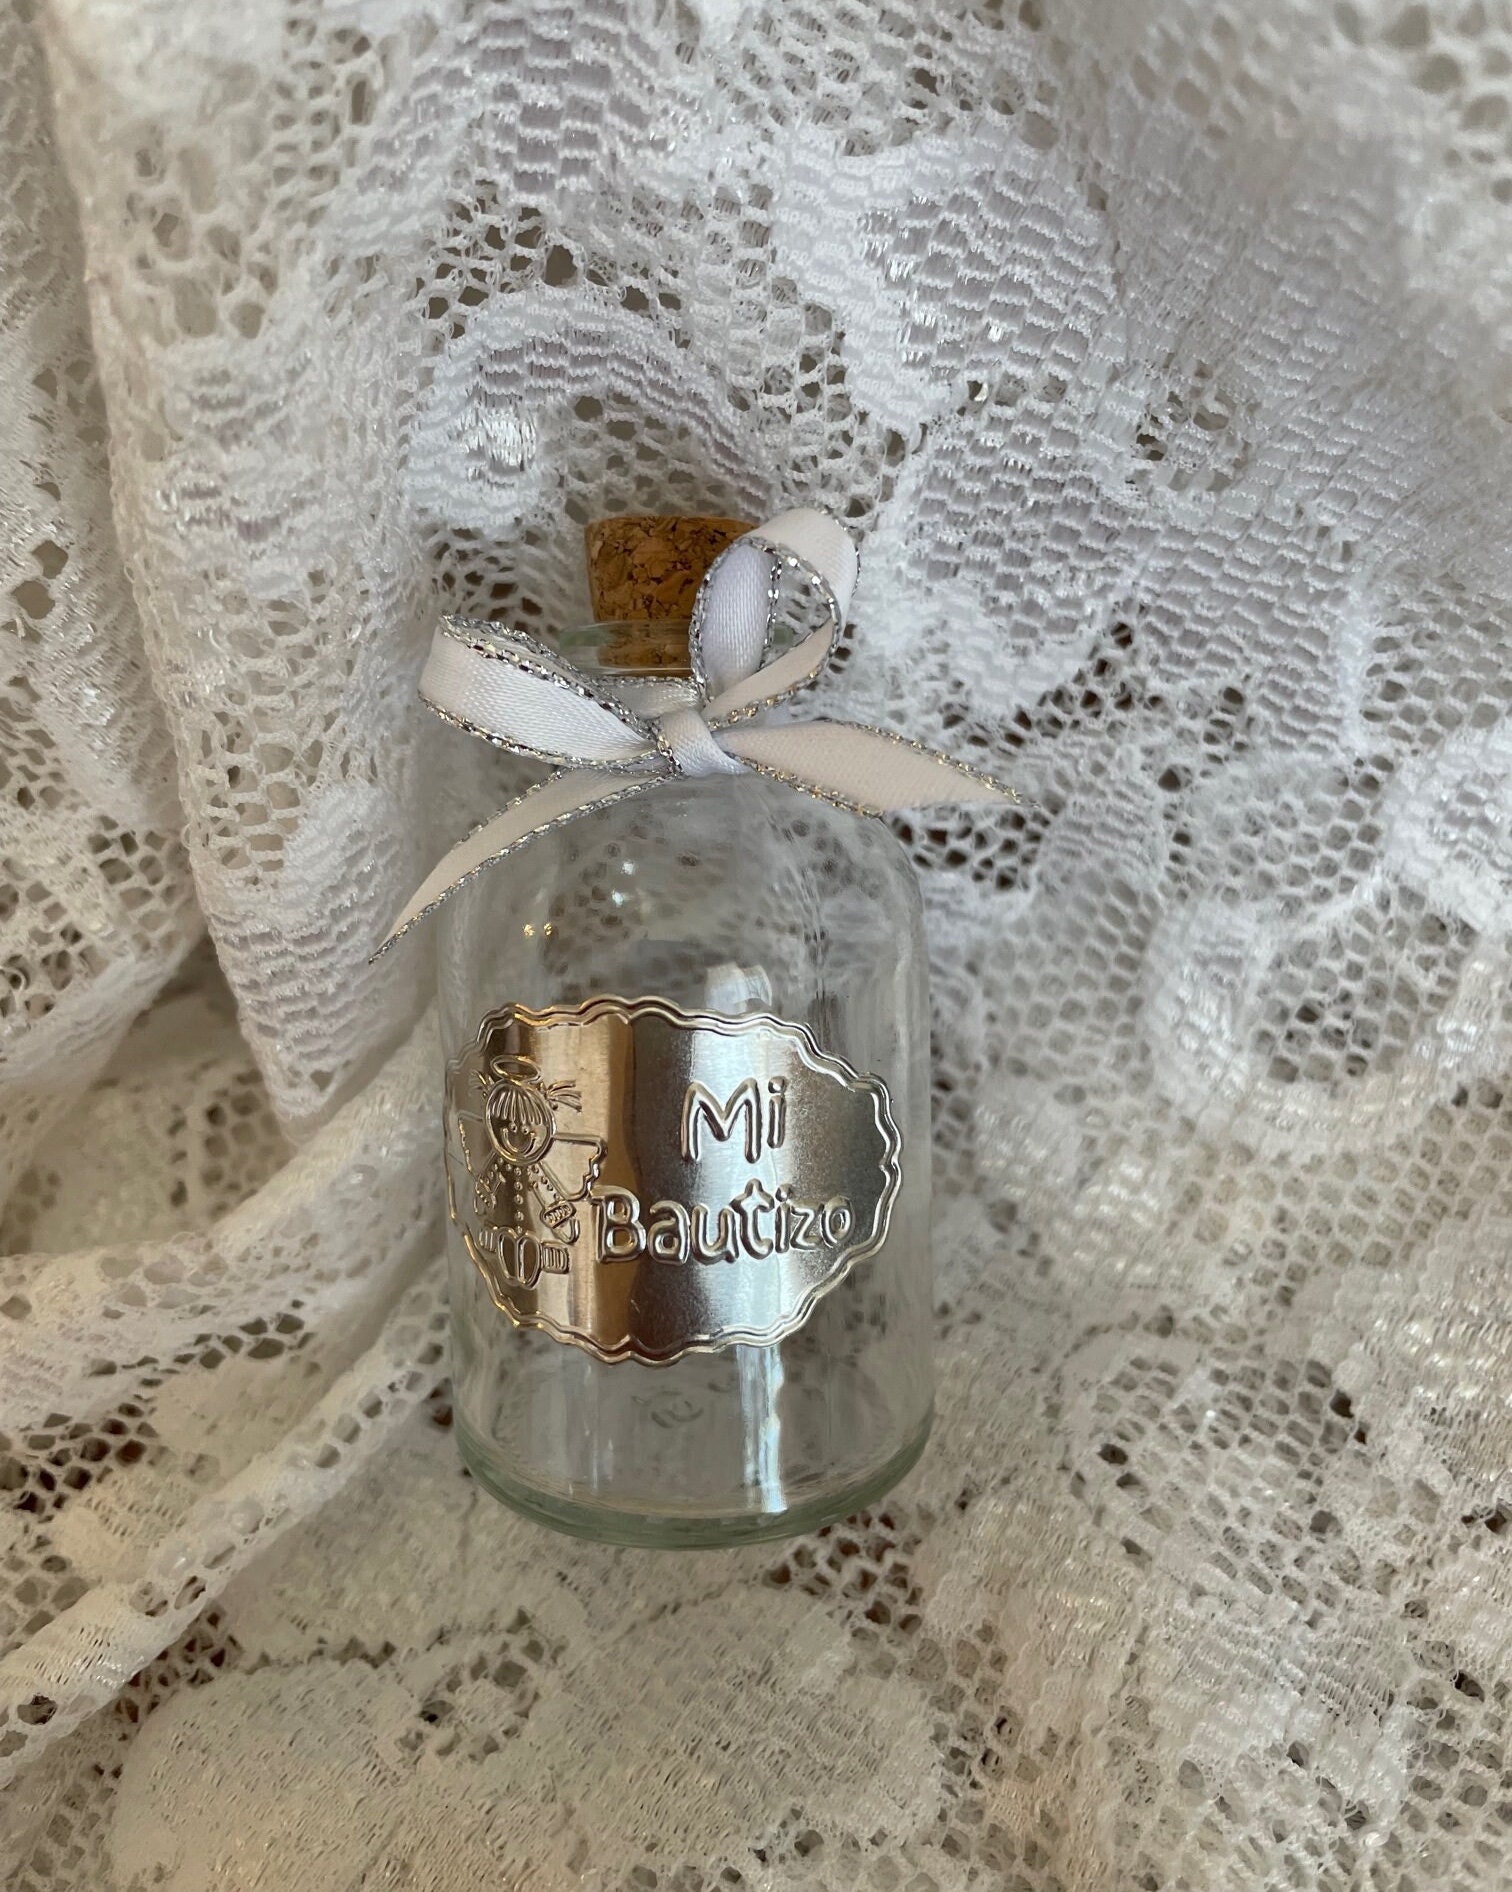 Botella de cristal de 1 litro - RG regalos publicitarios